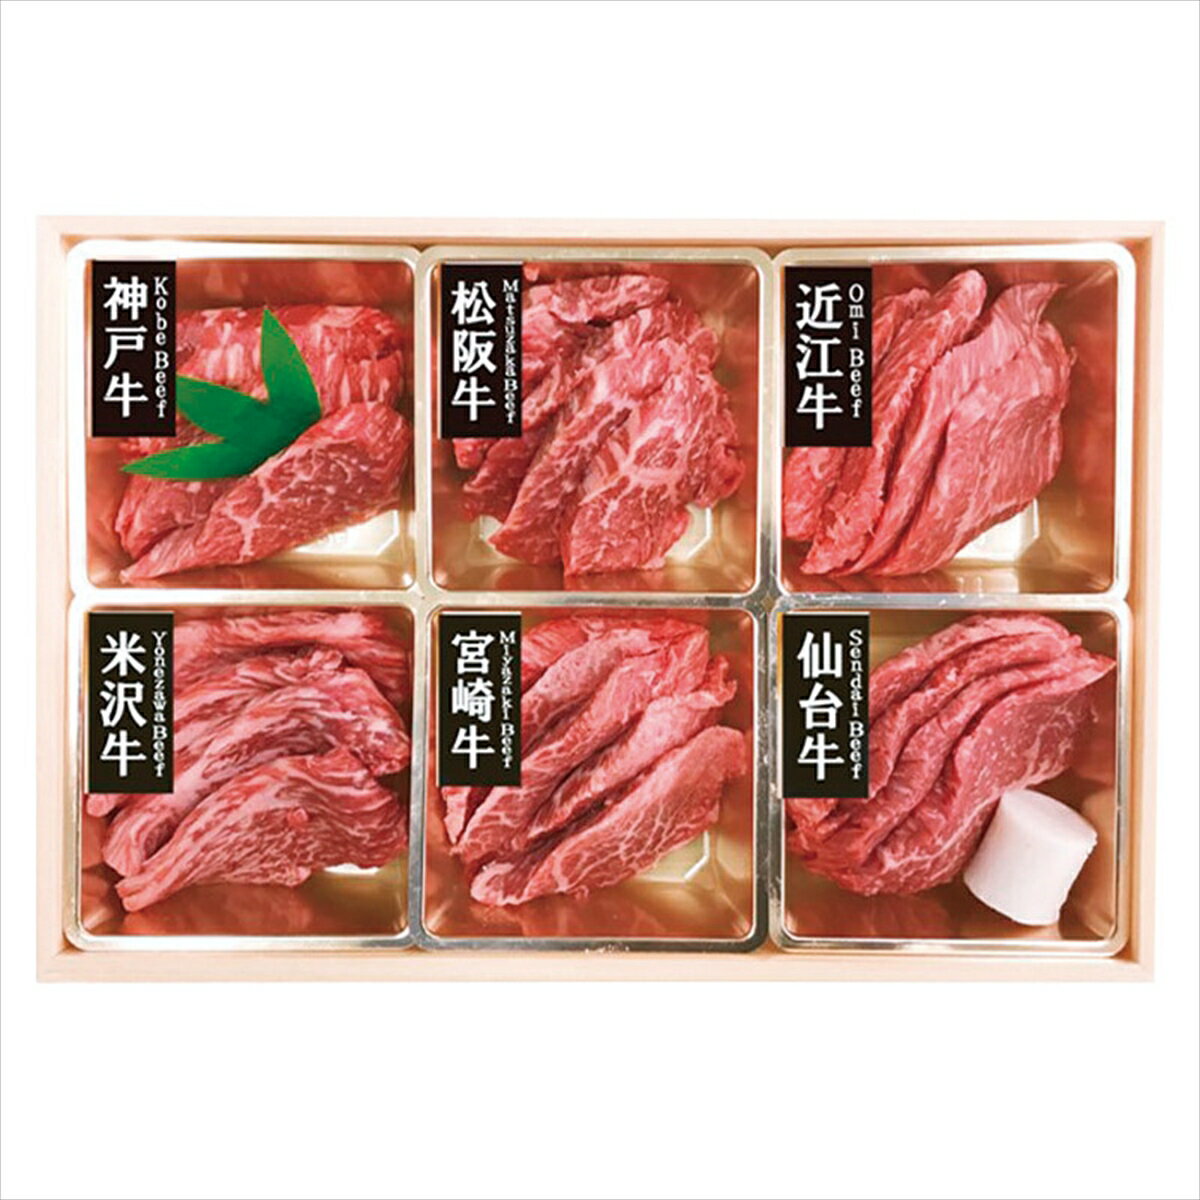 6大ブランド和牛食べ比べ焼肉用※北海道・沖縄・離島 お届け不可